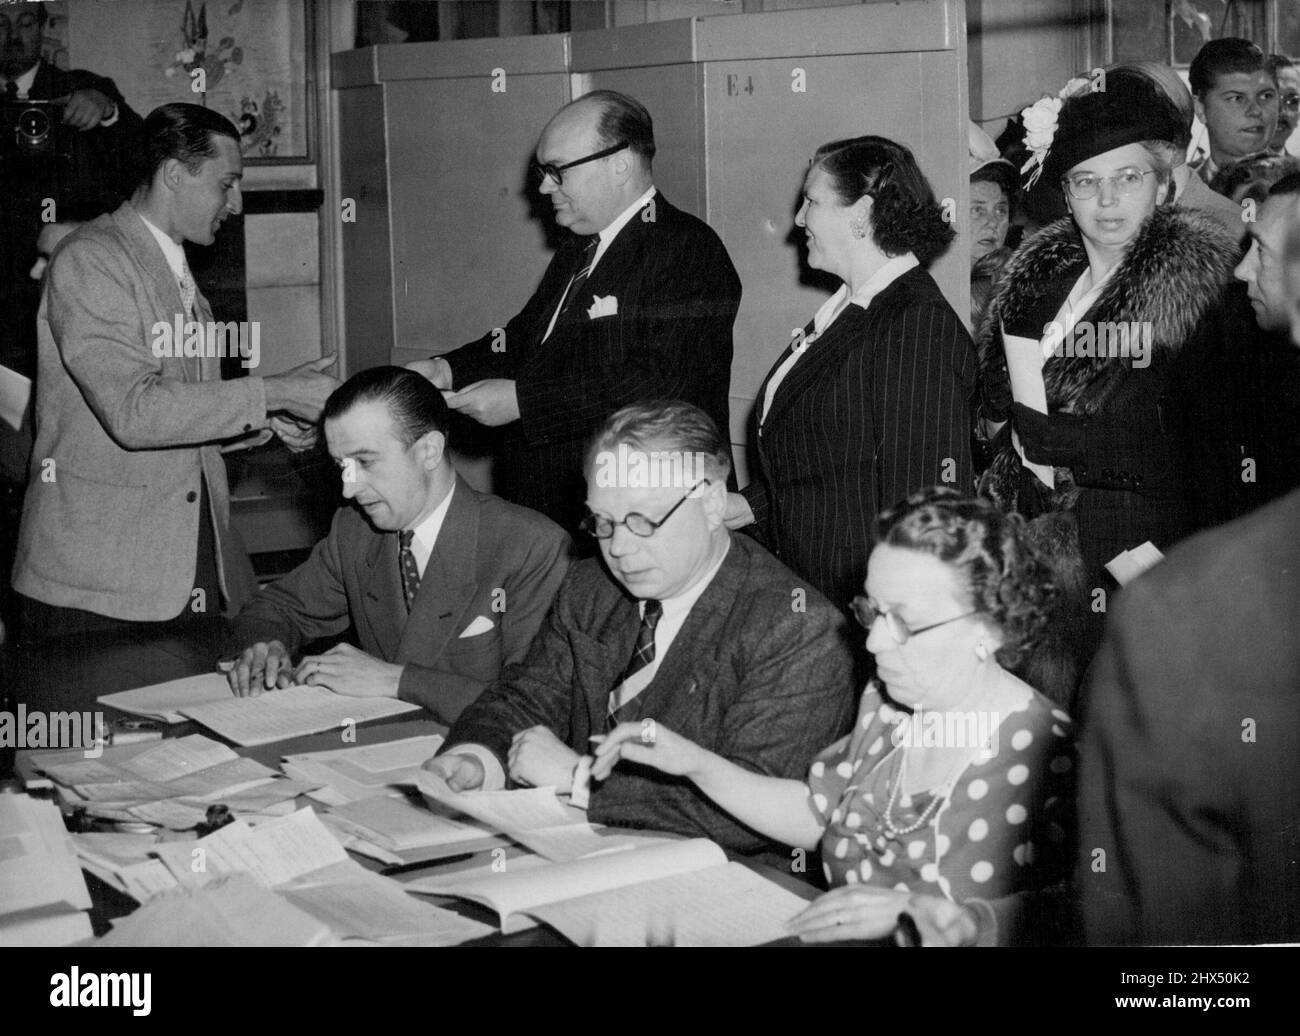 Spaak stimmt bei den belgischen Wahlen ab -- Herr Paul Heri Spaak, belgischer Premierminister und Außenminister, sammelt seine Stimmzettel, um seine Stimme in Brüssel für die Parlamentswahlen am heutigen 26. Juni abzugeben. Mit ihm sind einige belgische Frauen, die bei den Wahlen zum ersten Mal gewählt haben. 15. Juli 1949. Stockfoto